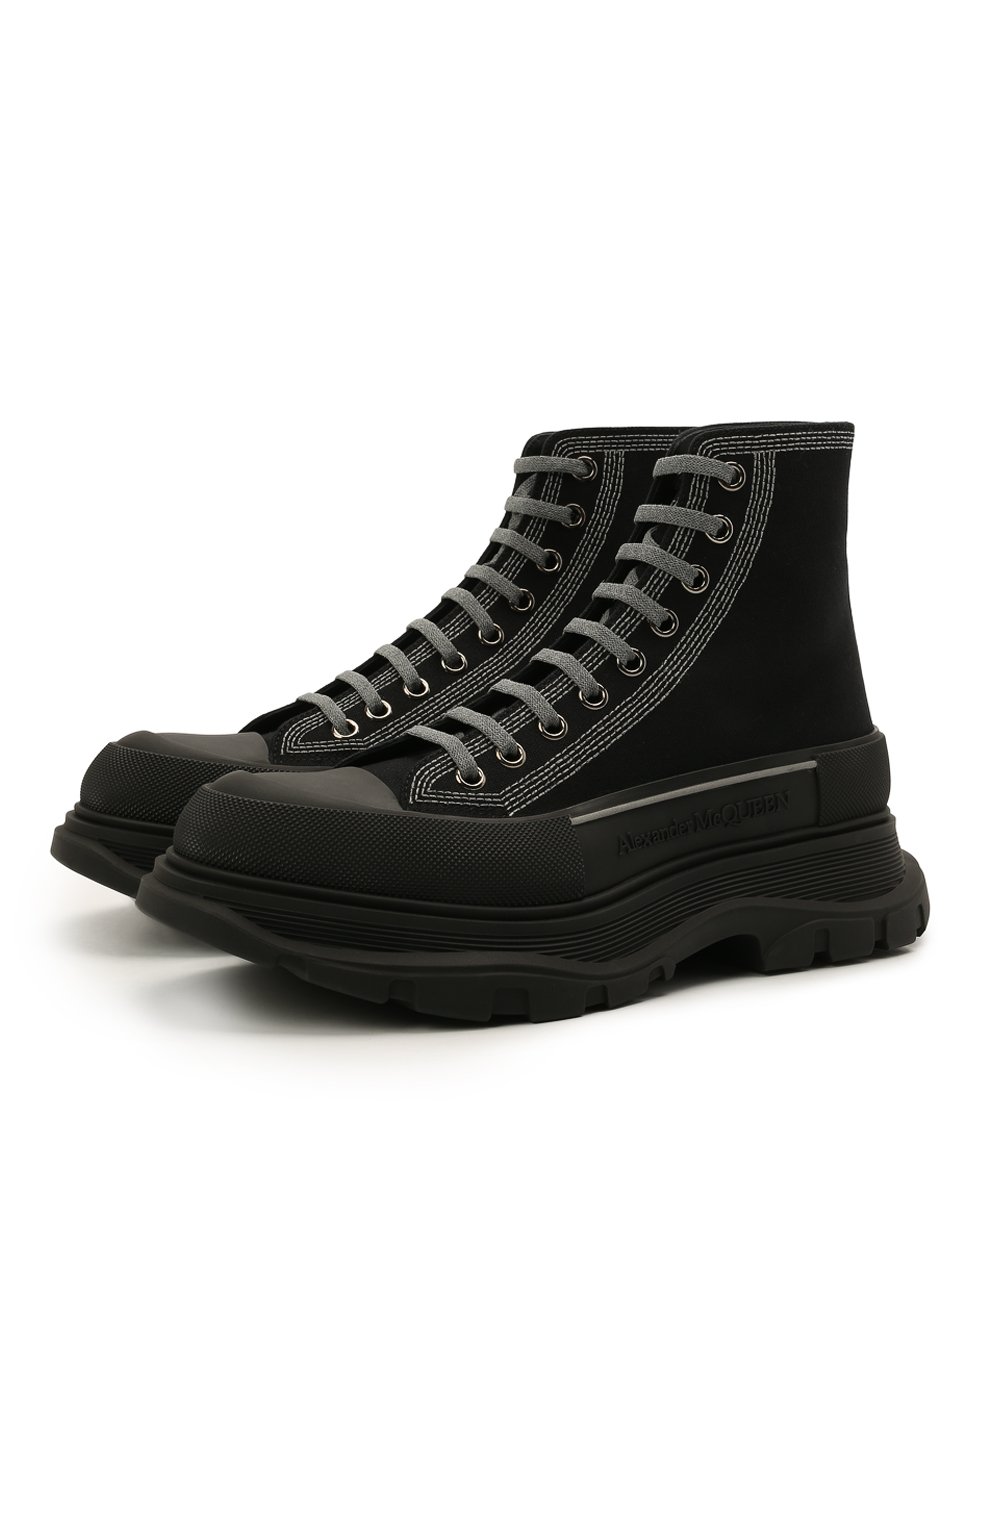 Мужские черные текстильные ботинки tread slick ALEXANDER MCQUEEN купить винтернет-магазине ЦУМ, арт. 662681/W4MV8